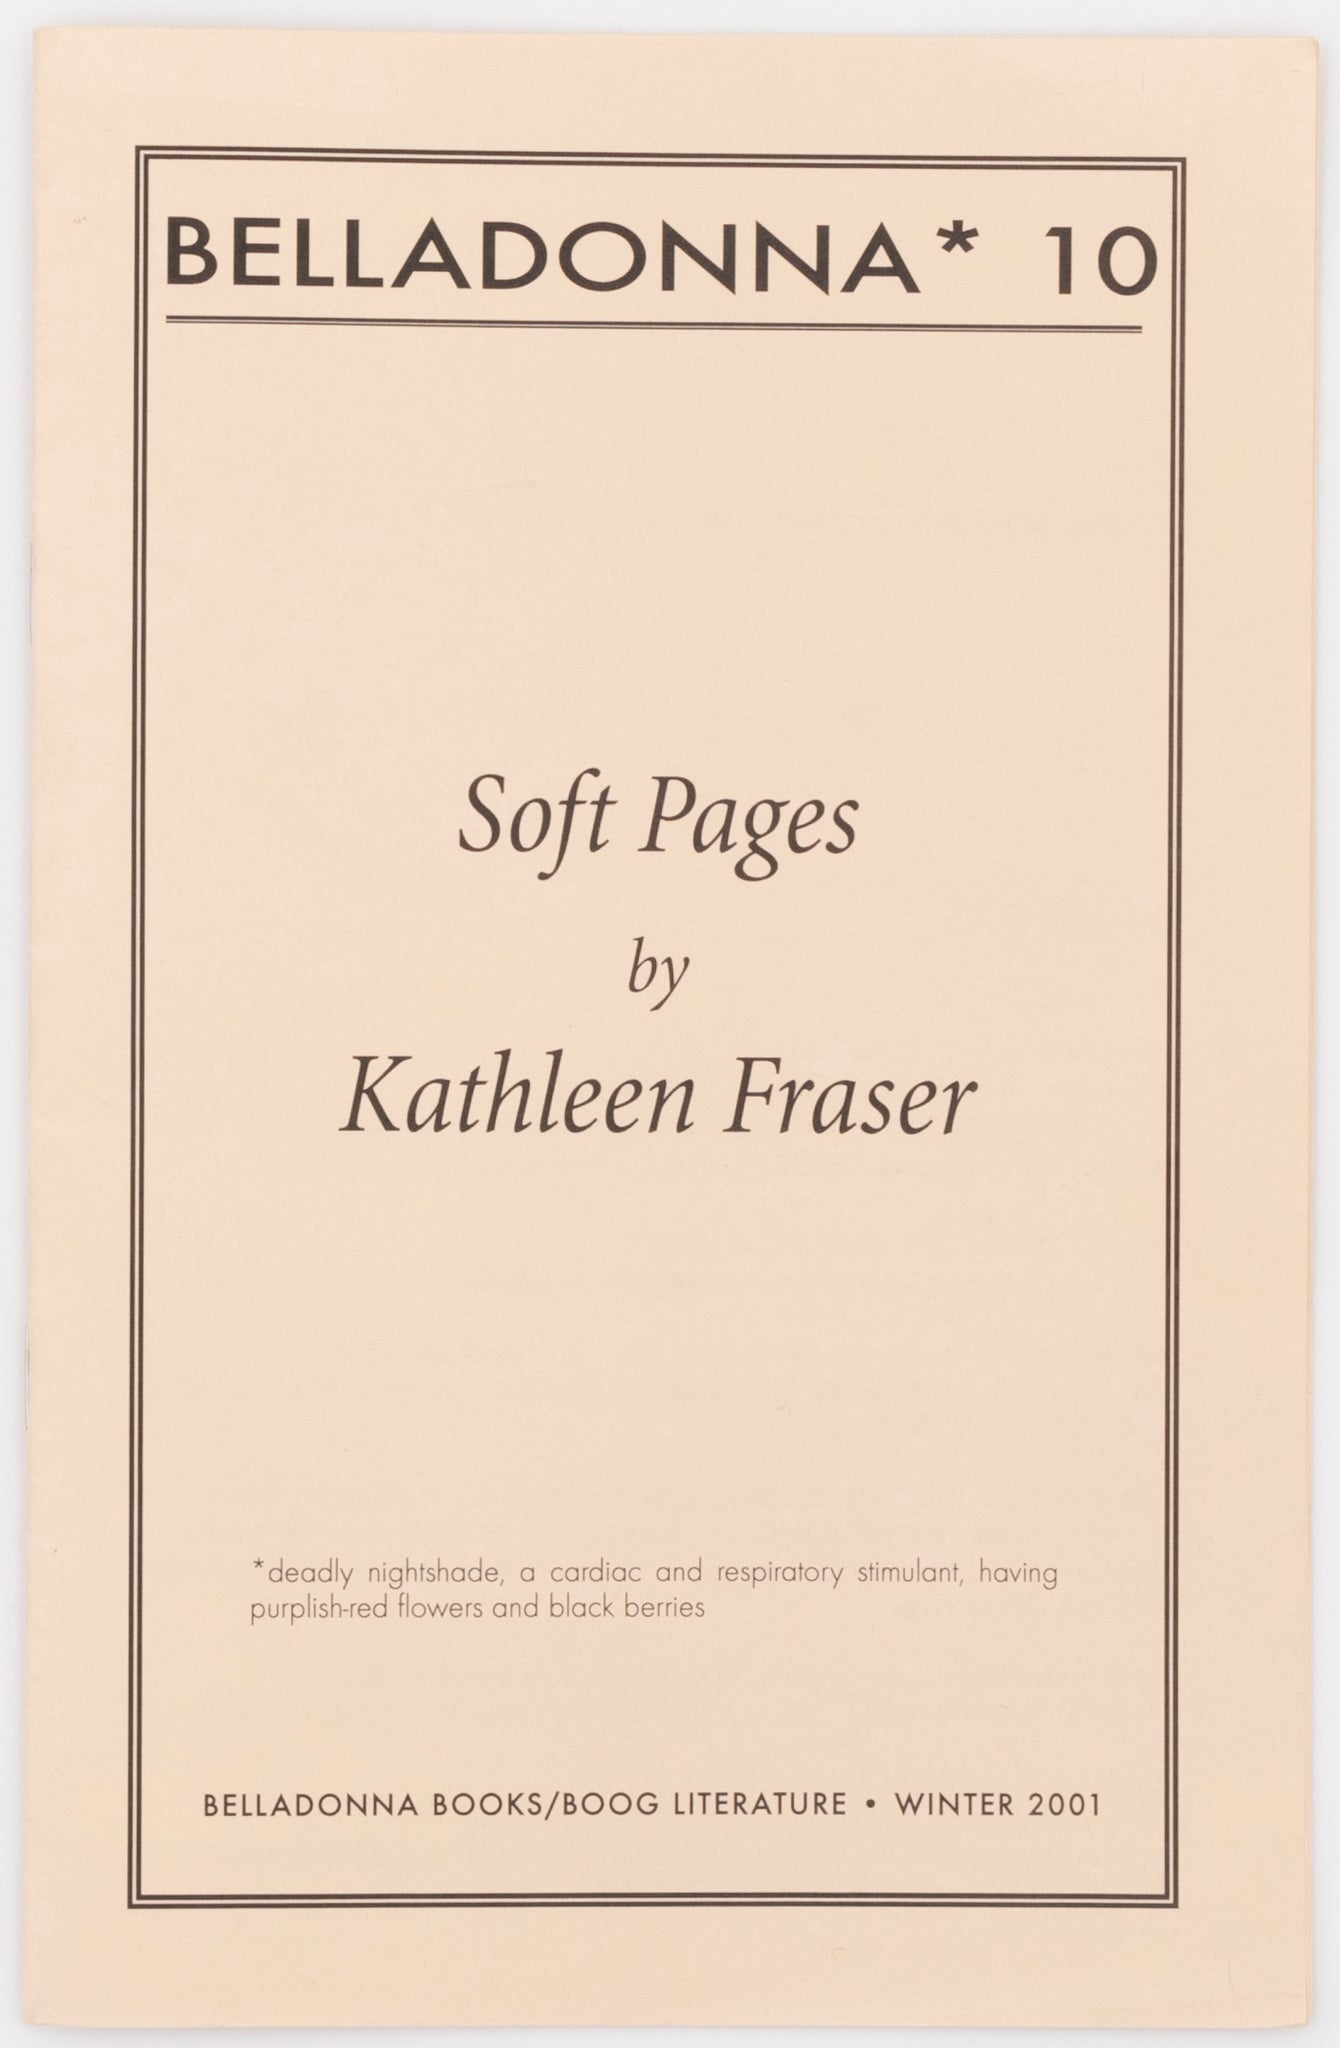 Soft Pages (Belladonna* #10)